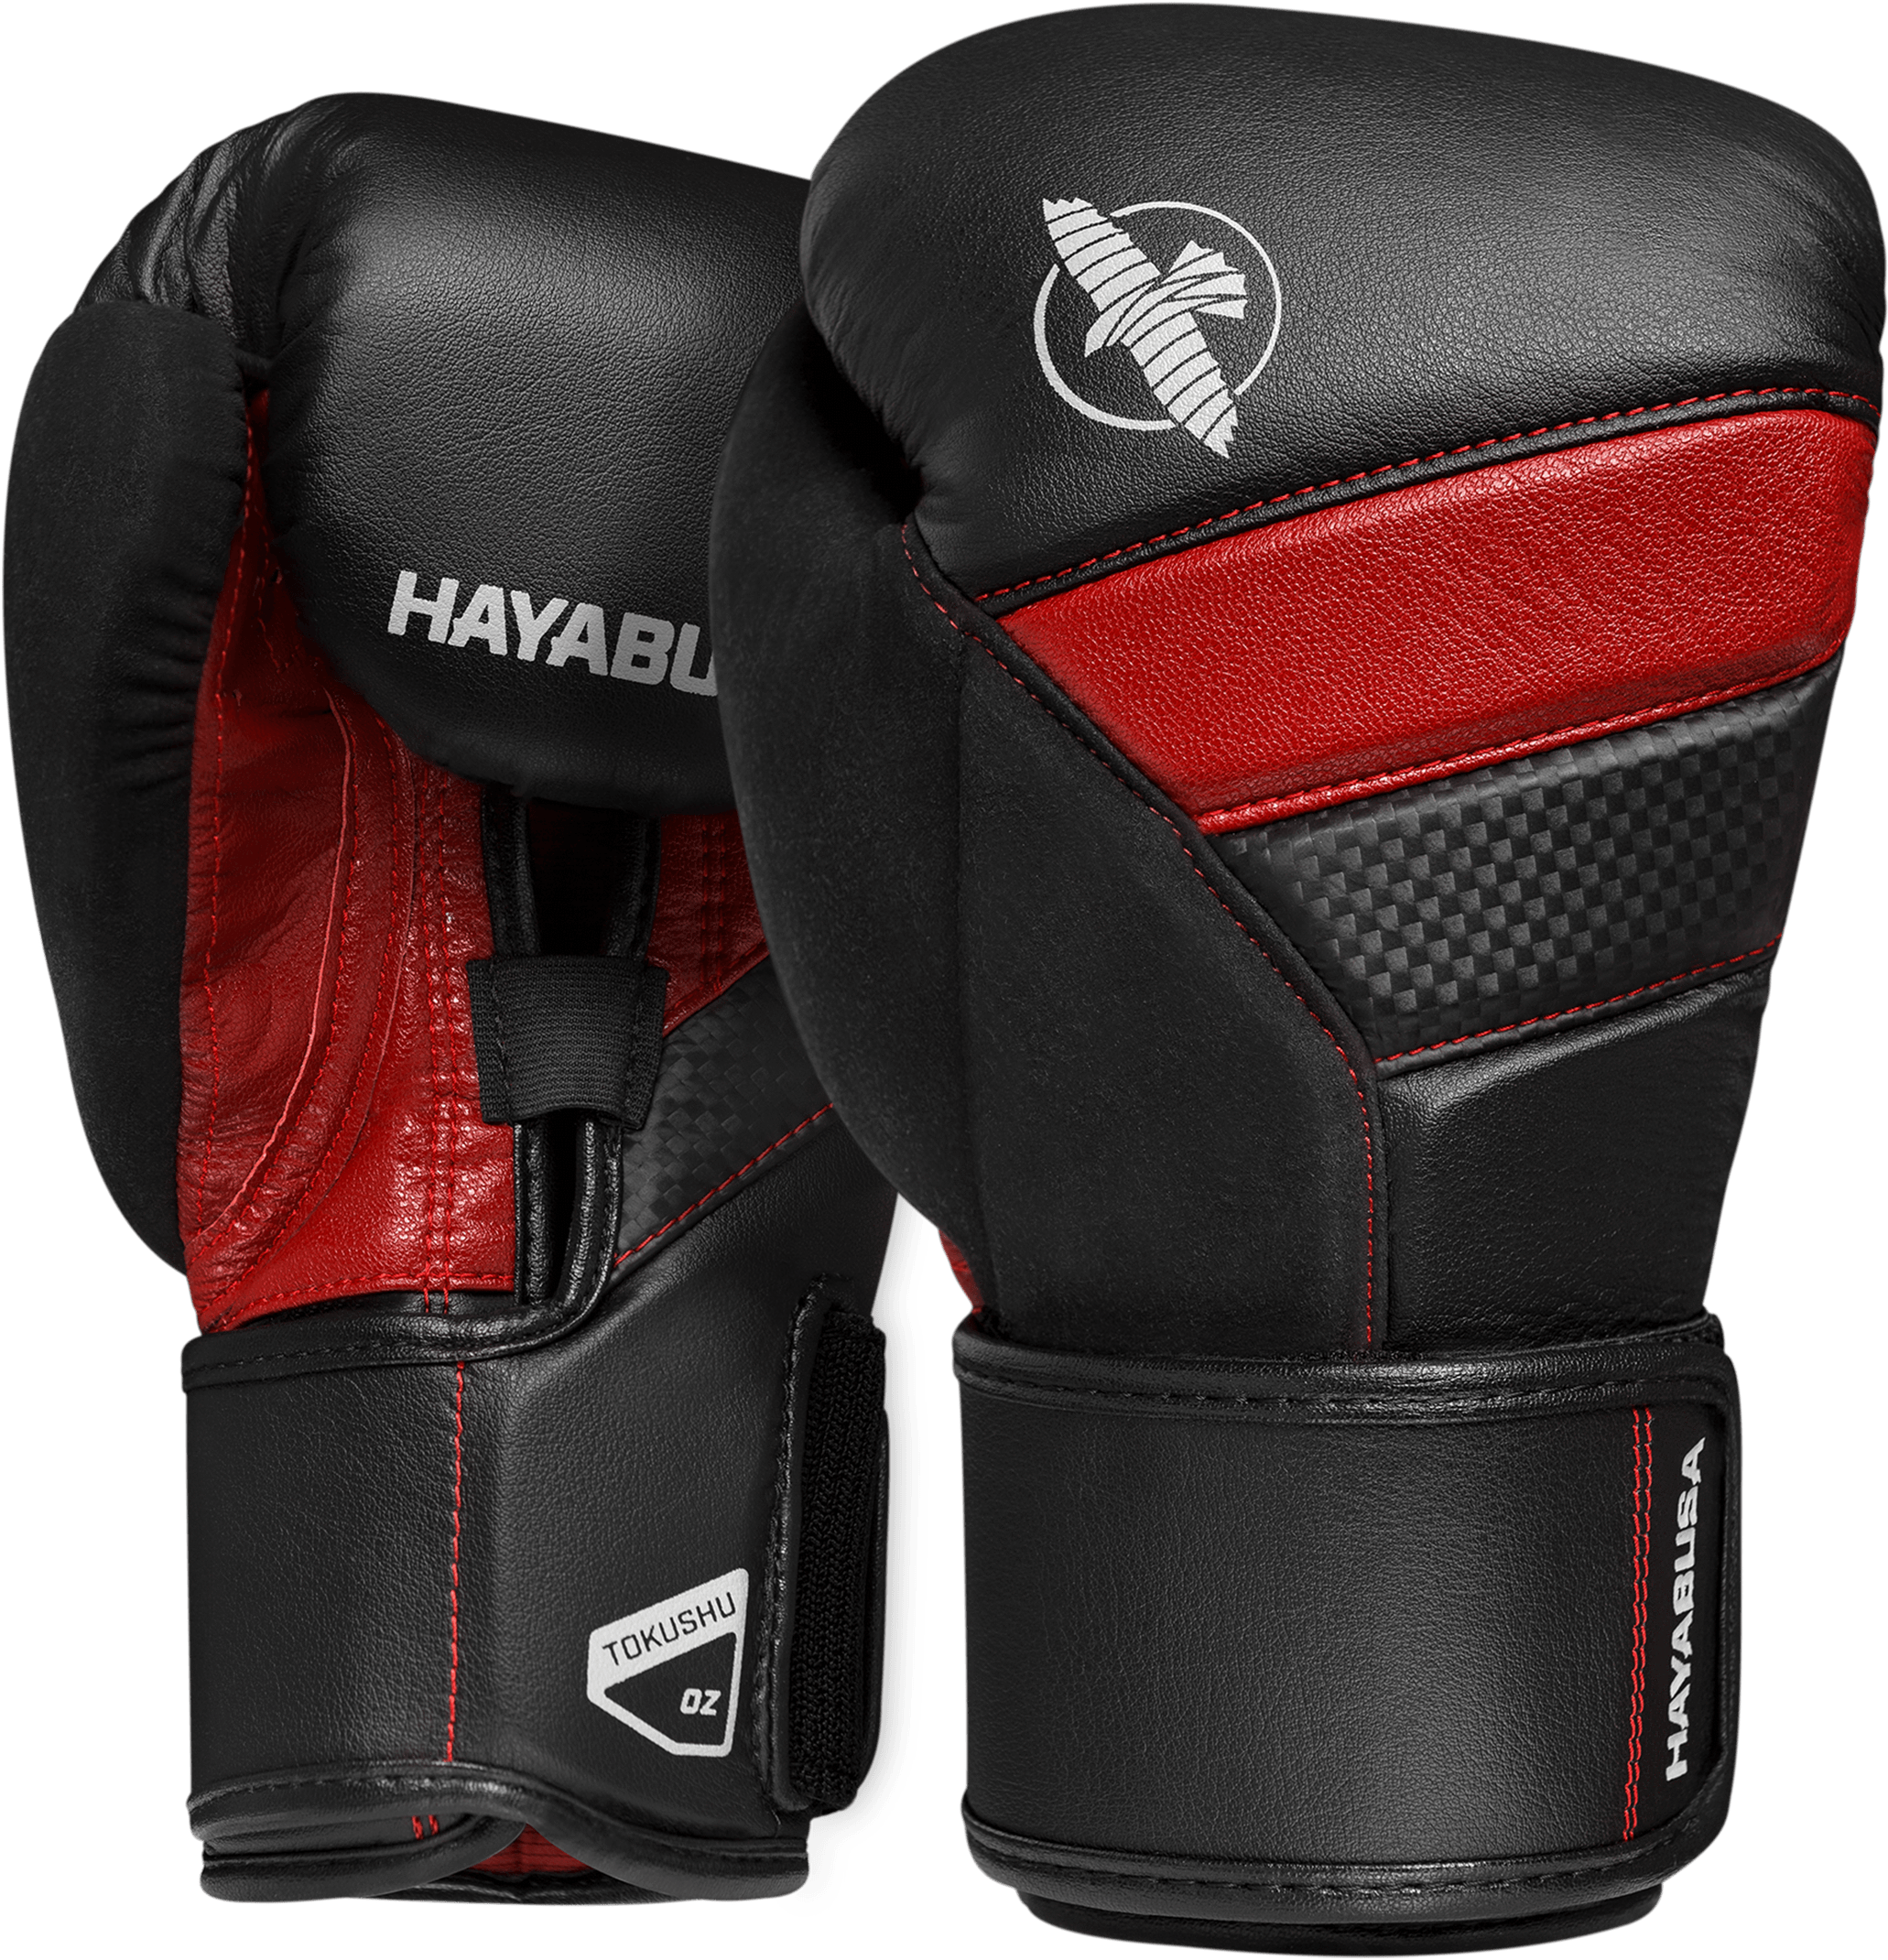 Redand Black Hayabusa Boxing Gloves